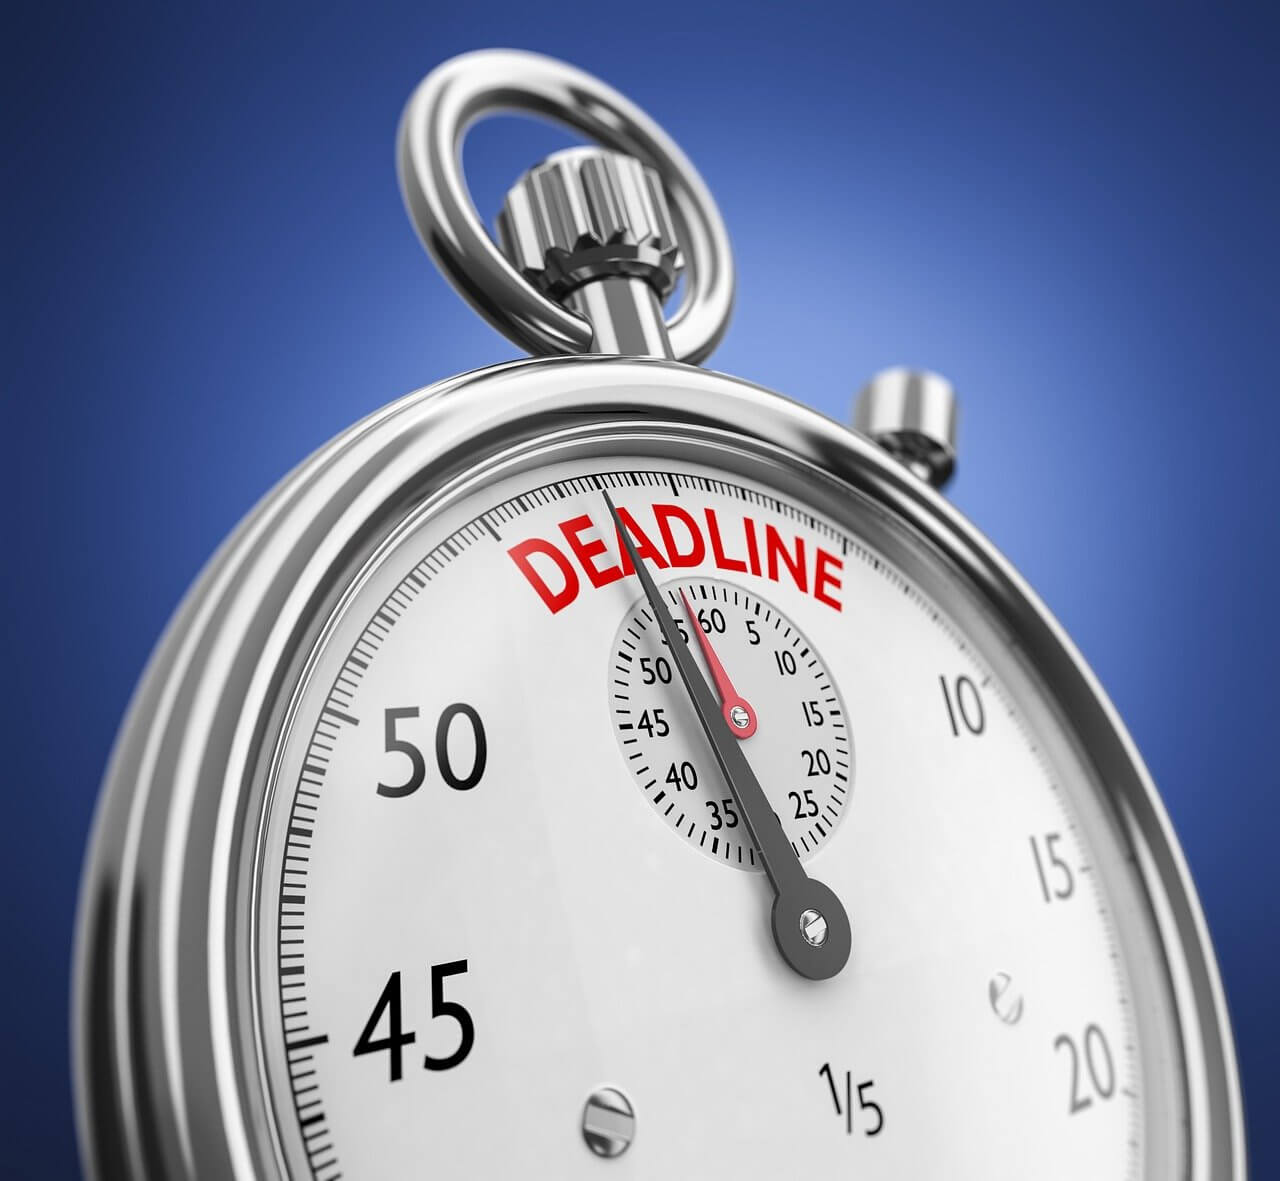 Que définit-on par le terme « deadline » ?